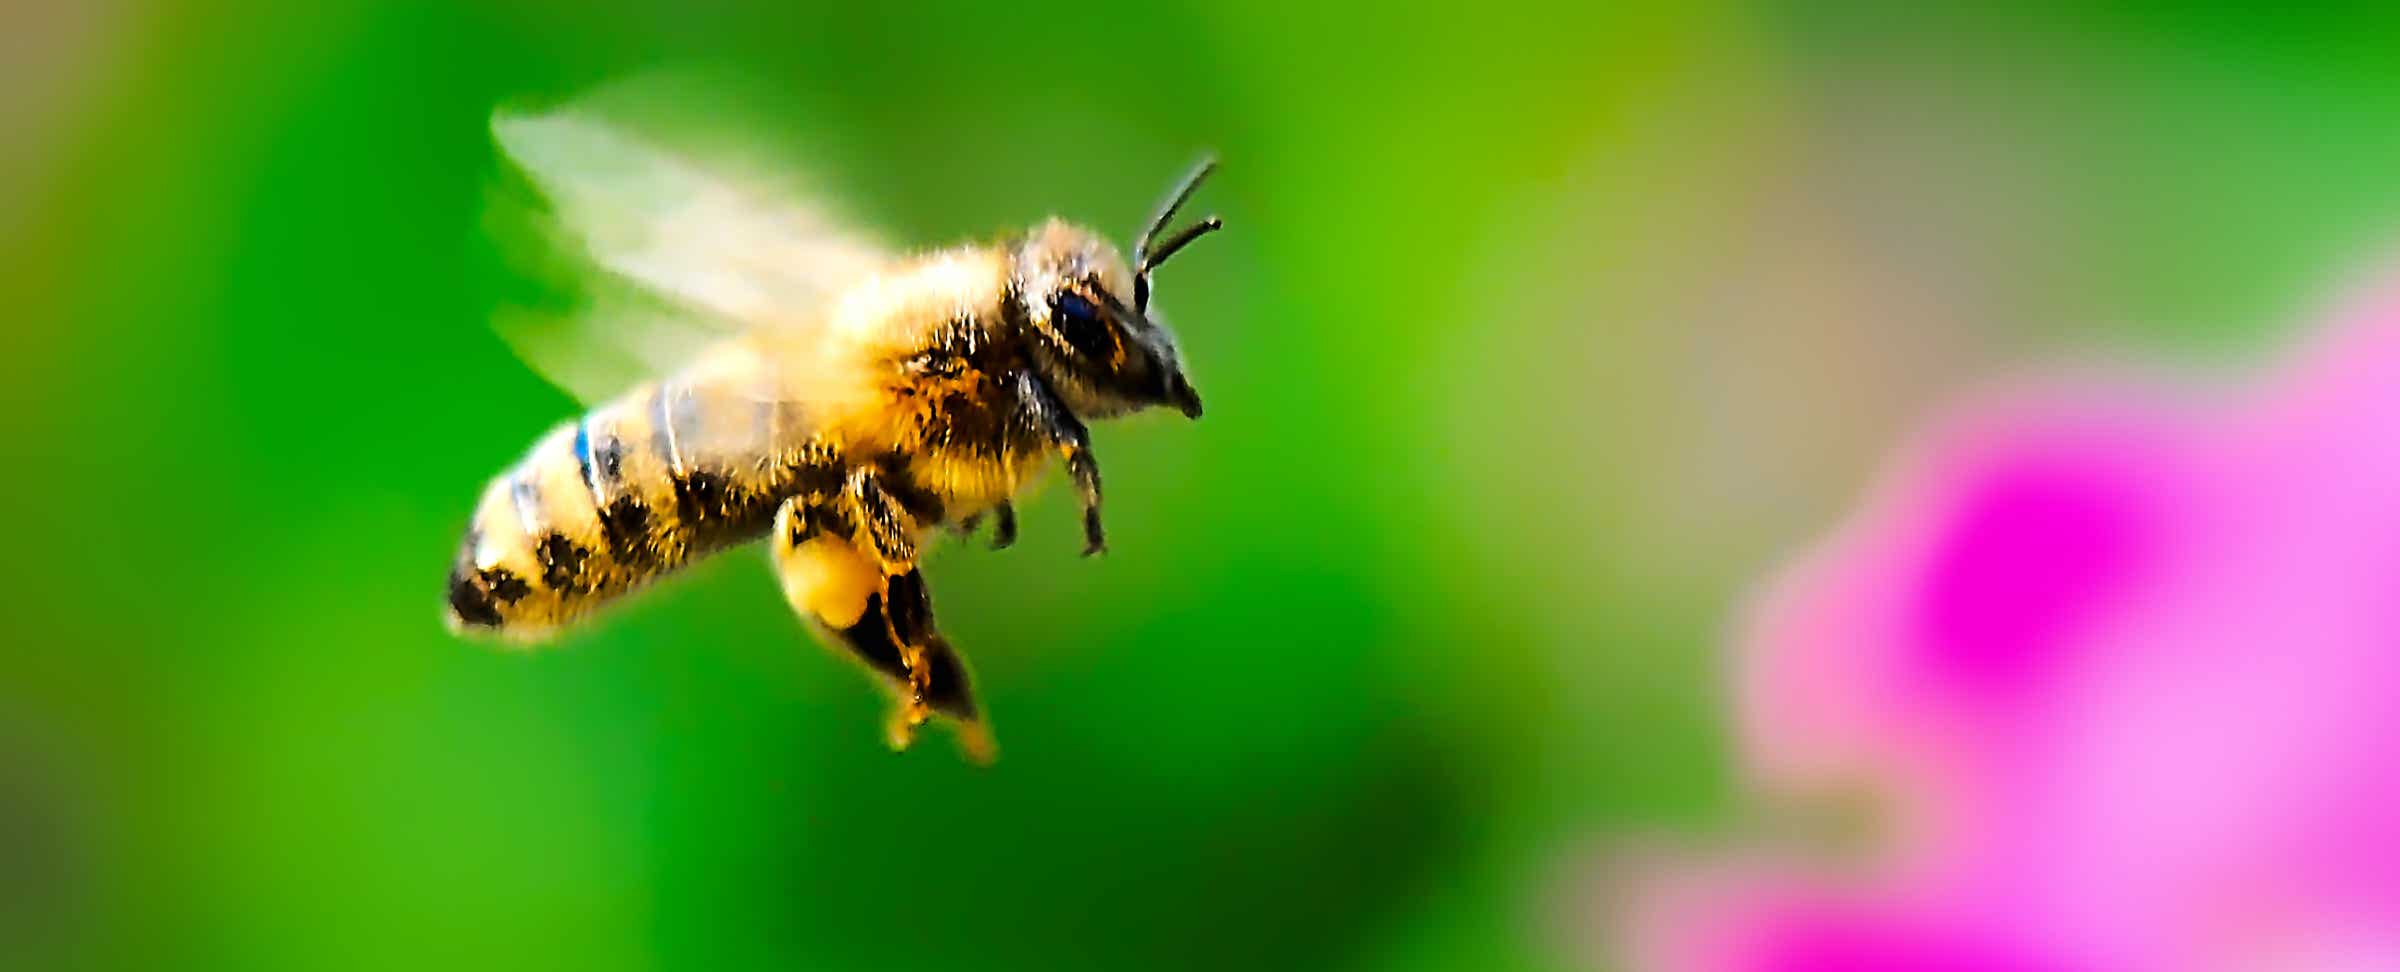 Macro-Serien-Aufnahme 4.4 Biene mit Pollensäcken an Beinen - Schwebeflug